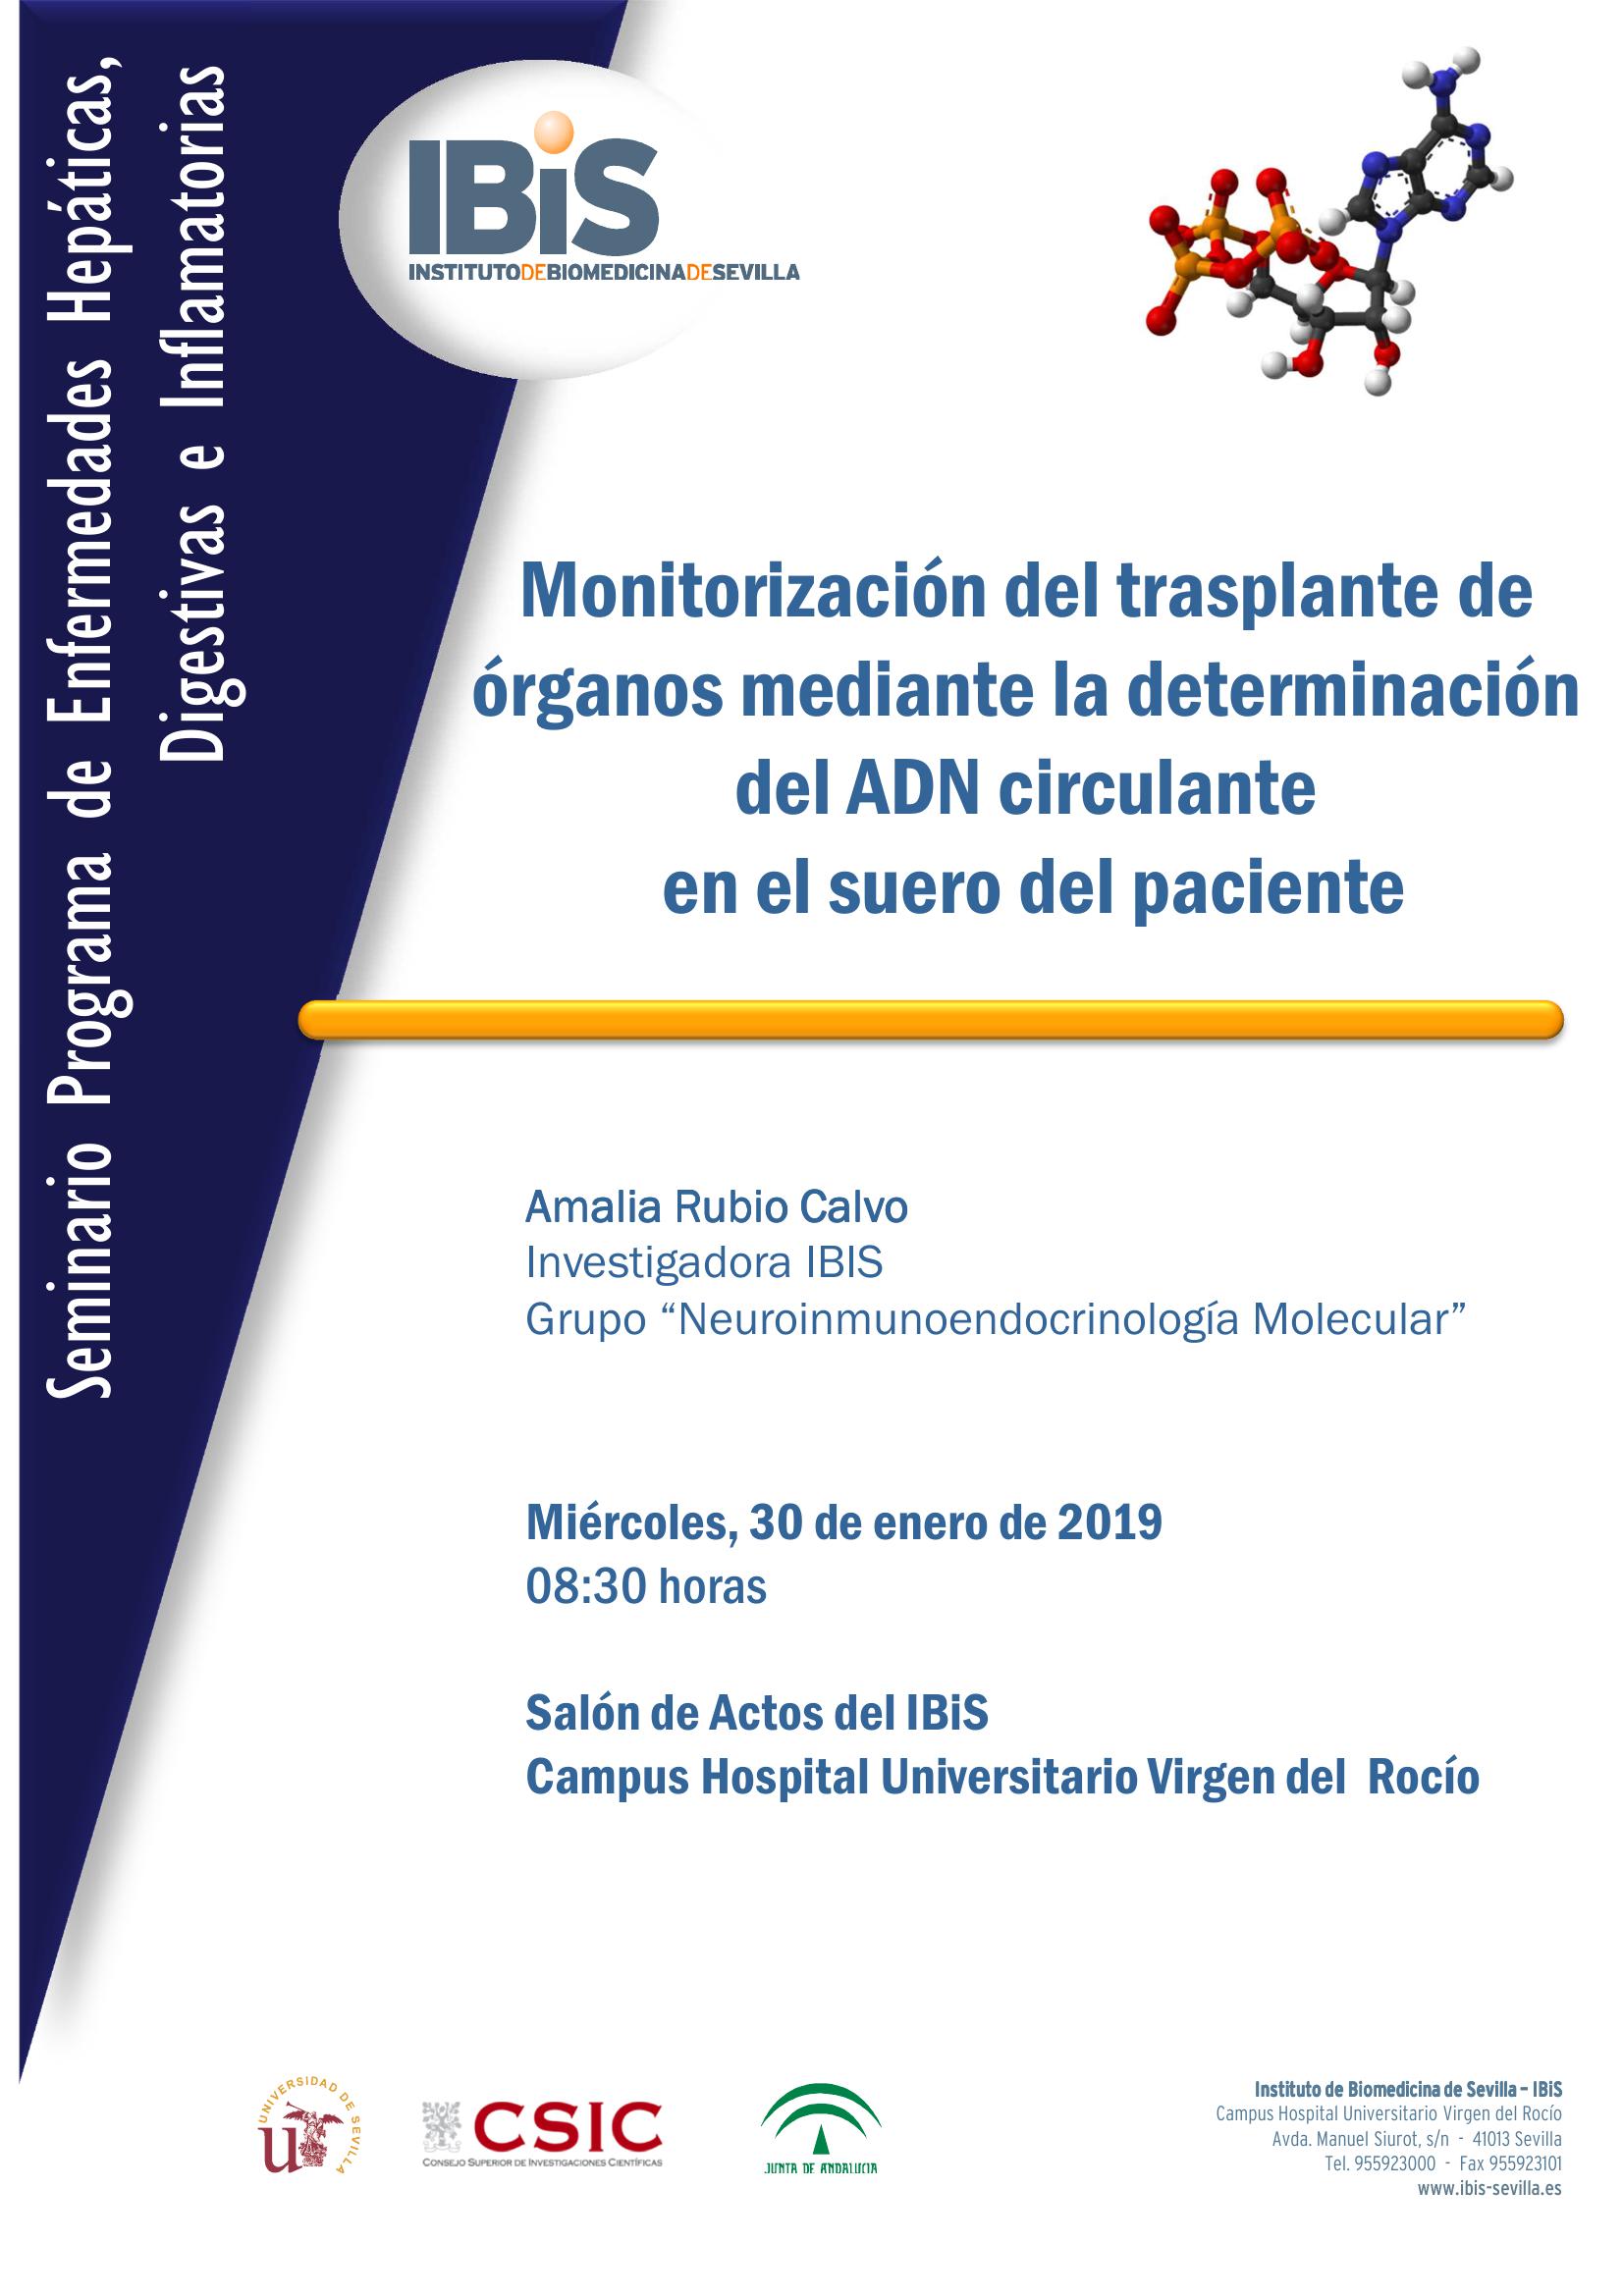 Poster: Monitorización del trasplante de órganos mediante la determinación del ADN circulante  en el suero del paciente